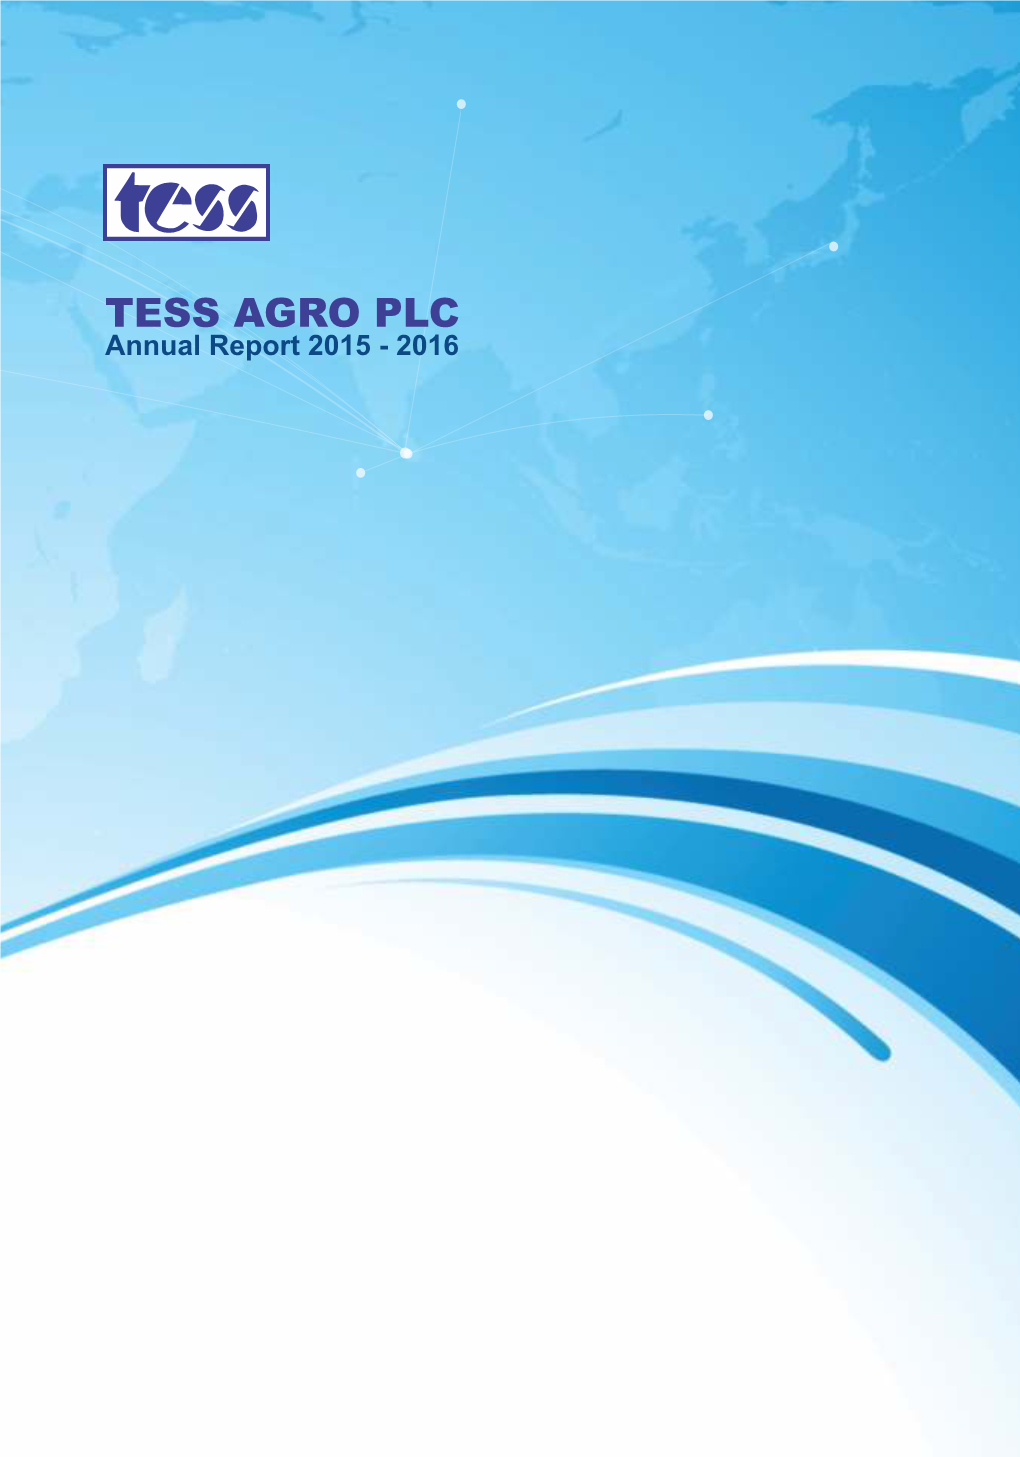 Annual Report 2015 - 2016 Annual Report